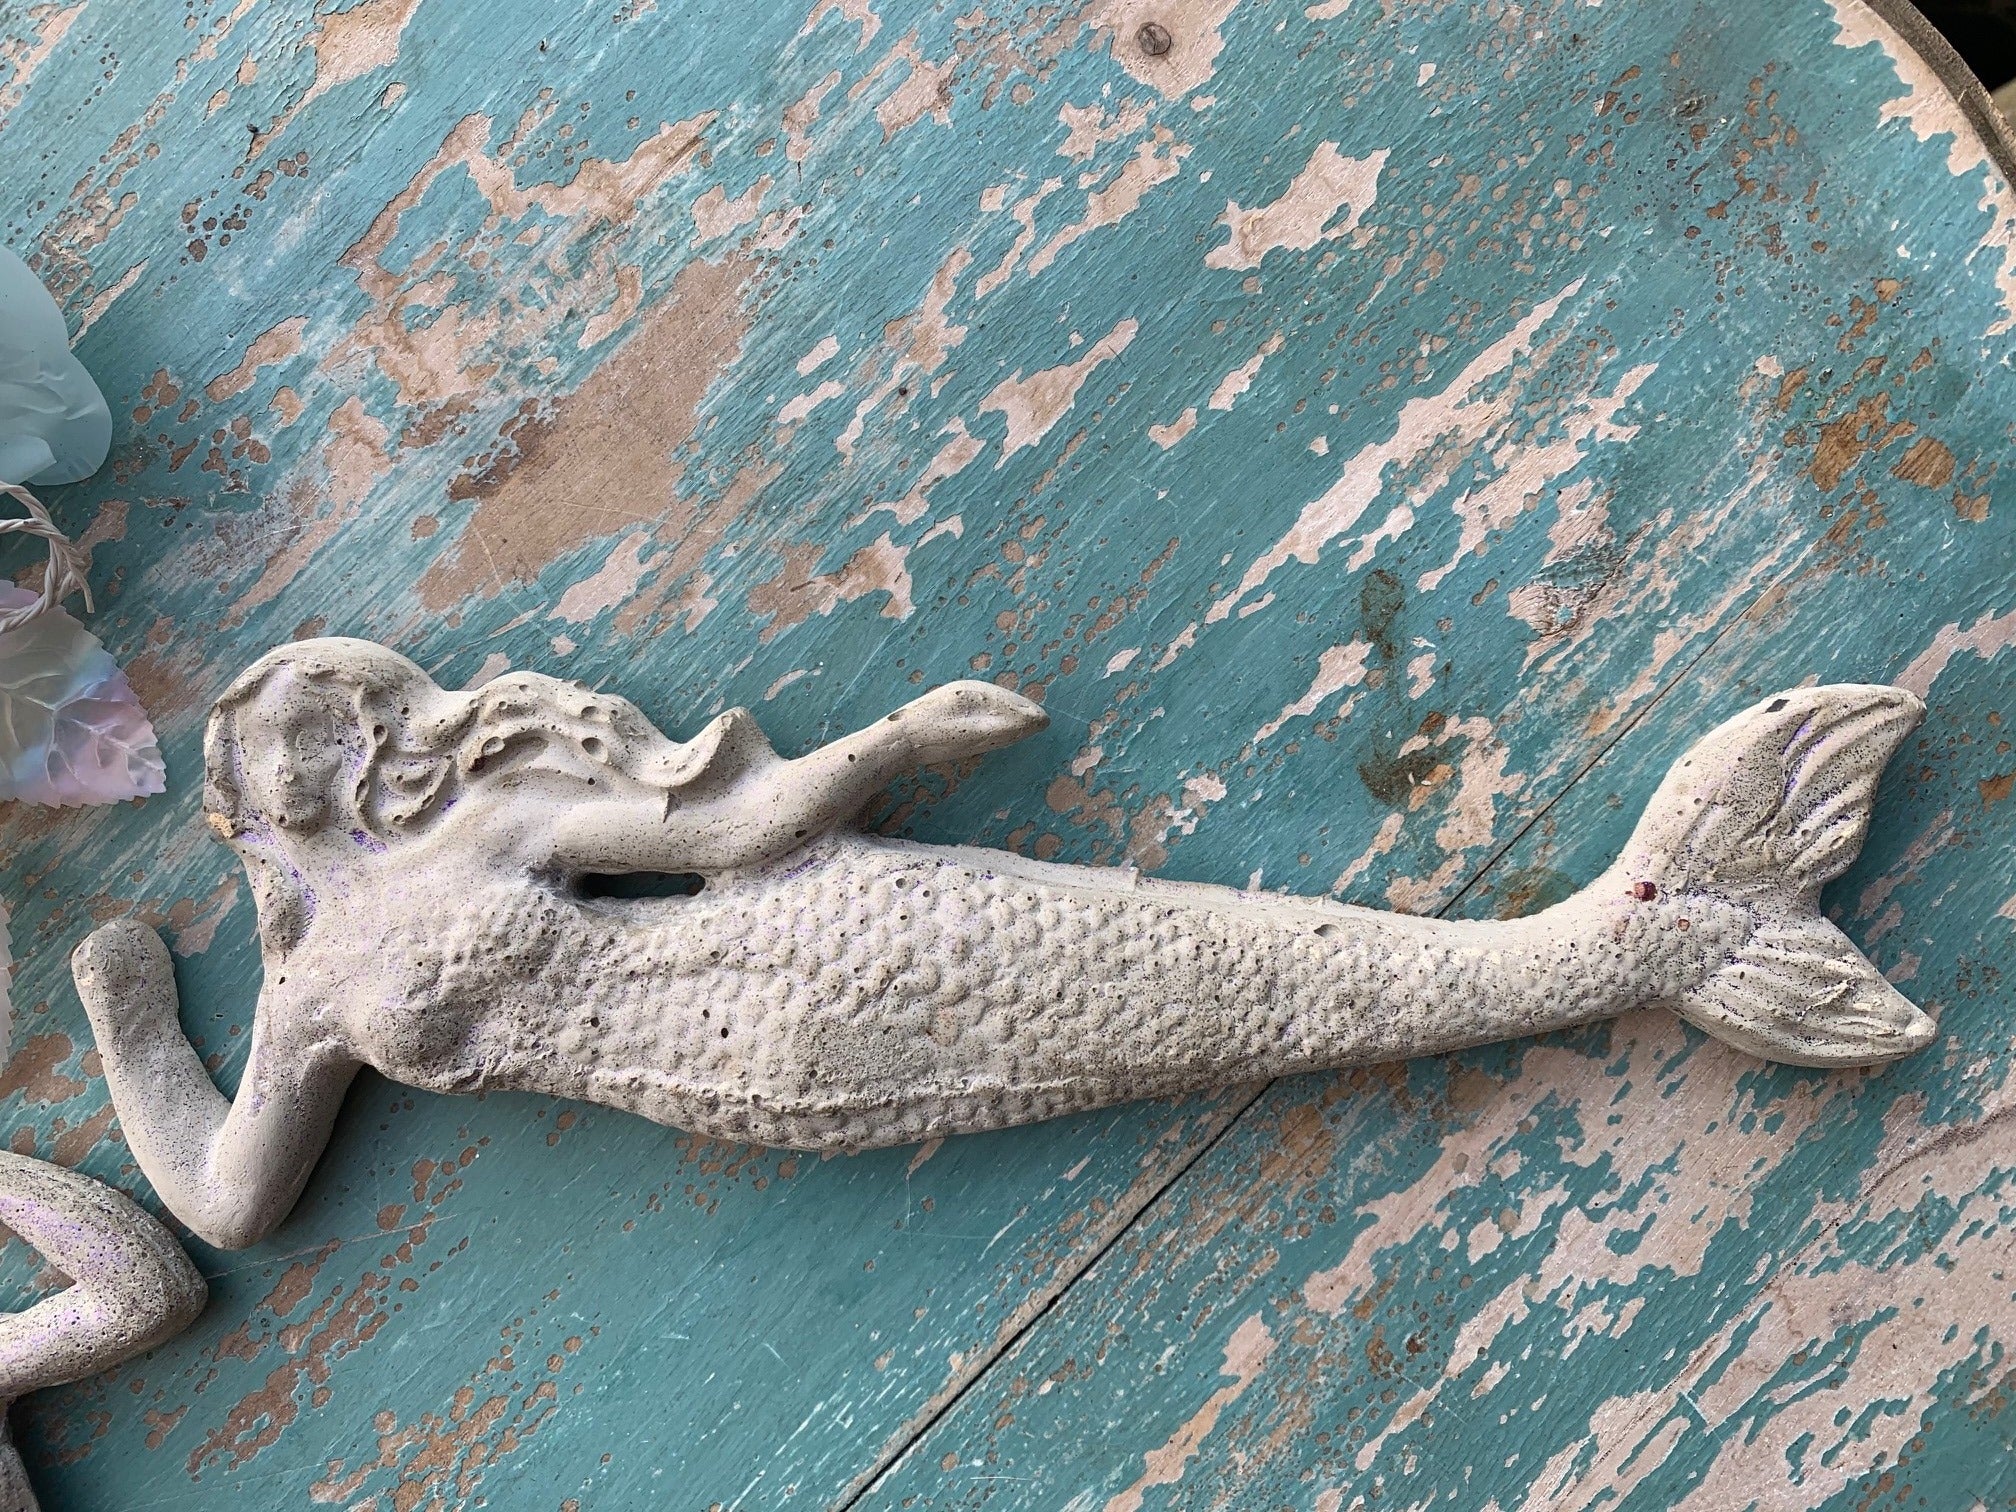 Concrete Mermaid Ornament - PARCEL